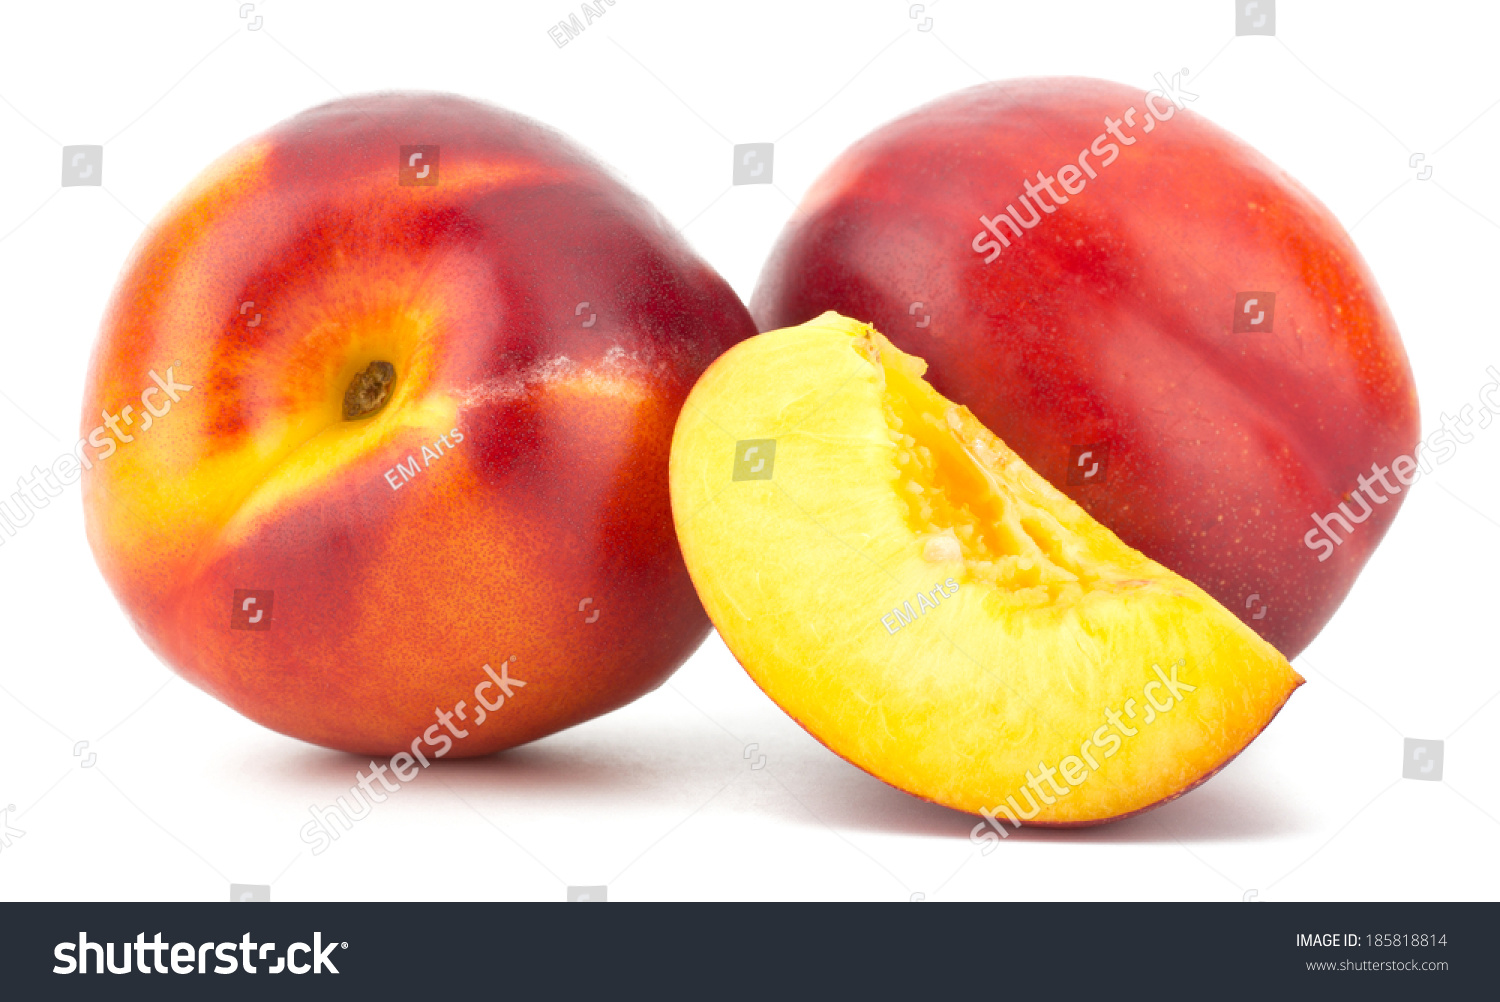 Nectarine fruit isolated on white background #185818814